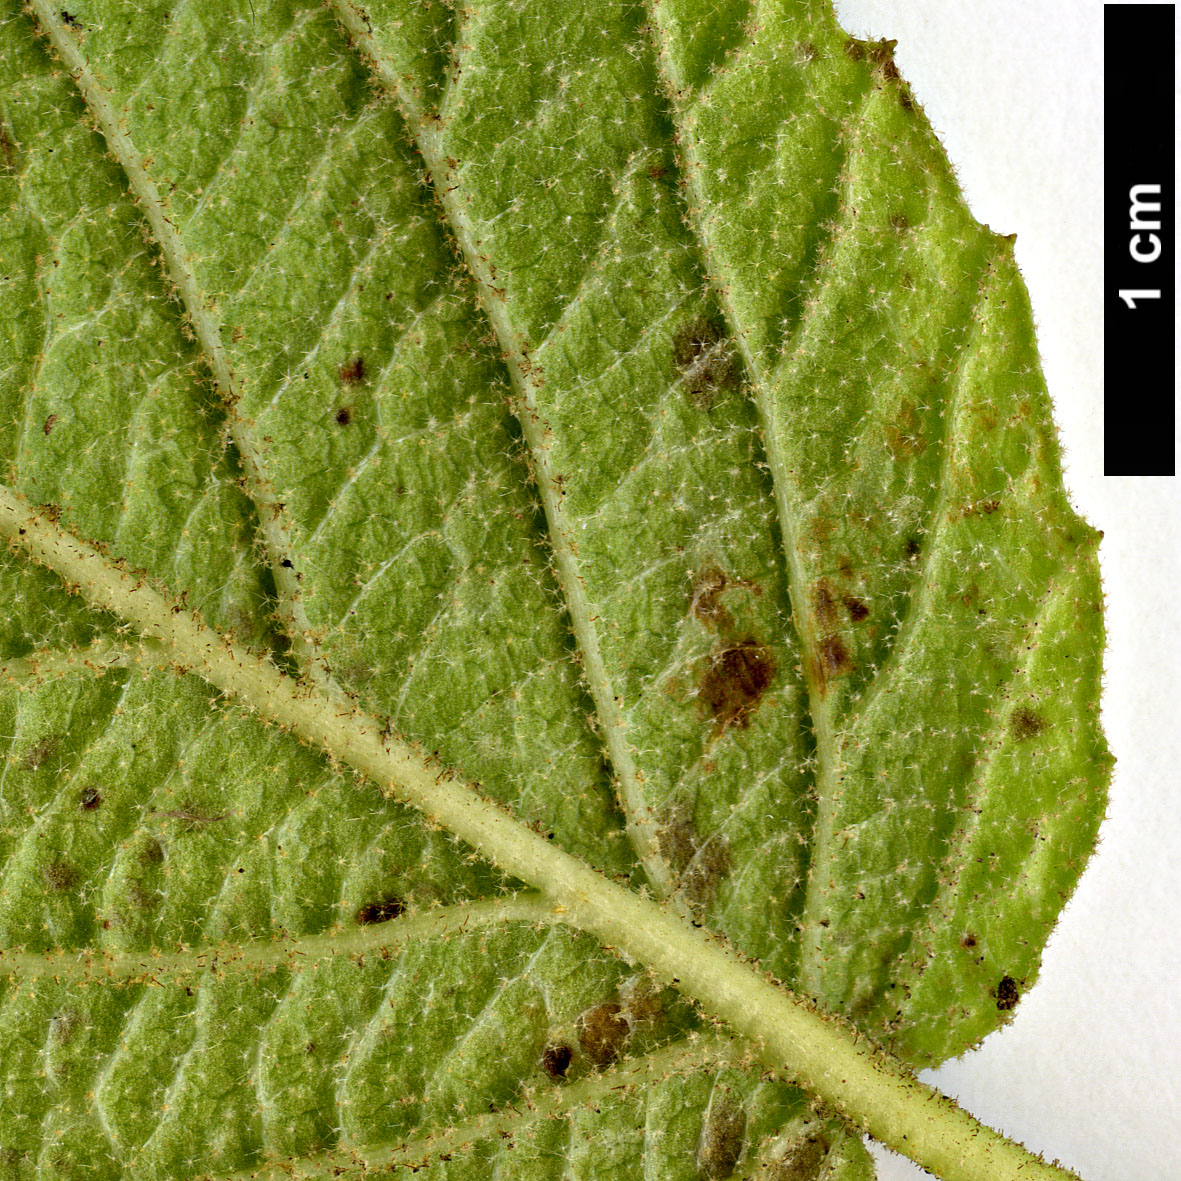 High resolution image: Family: Adoxaceae - Genus: Viburnum - Taxon: glomeratum - SpeciesSub: subsp. glomeratum